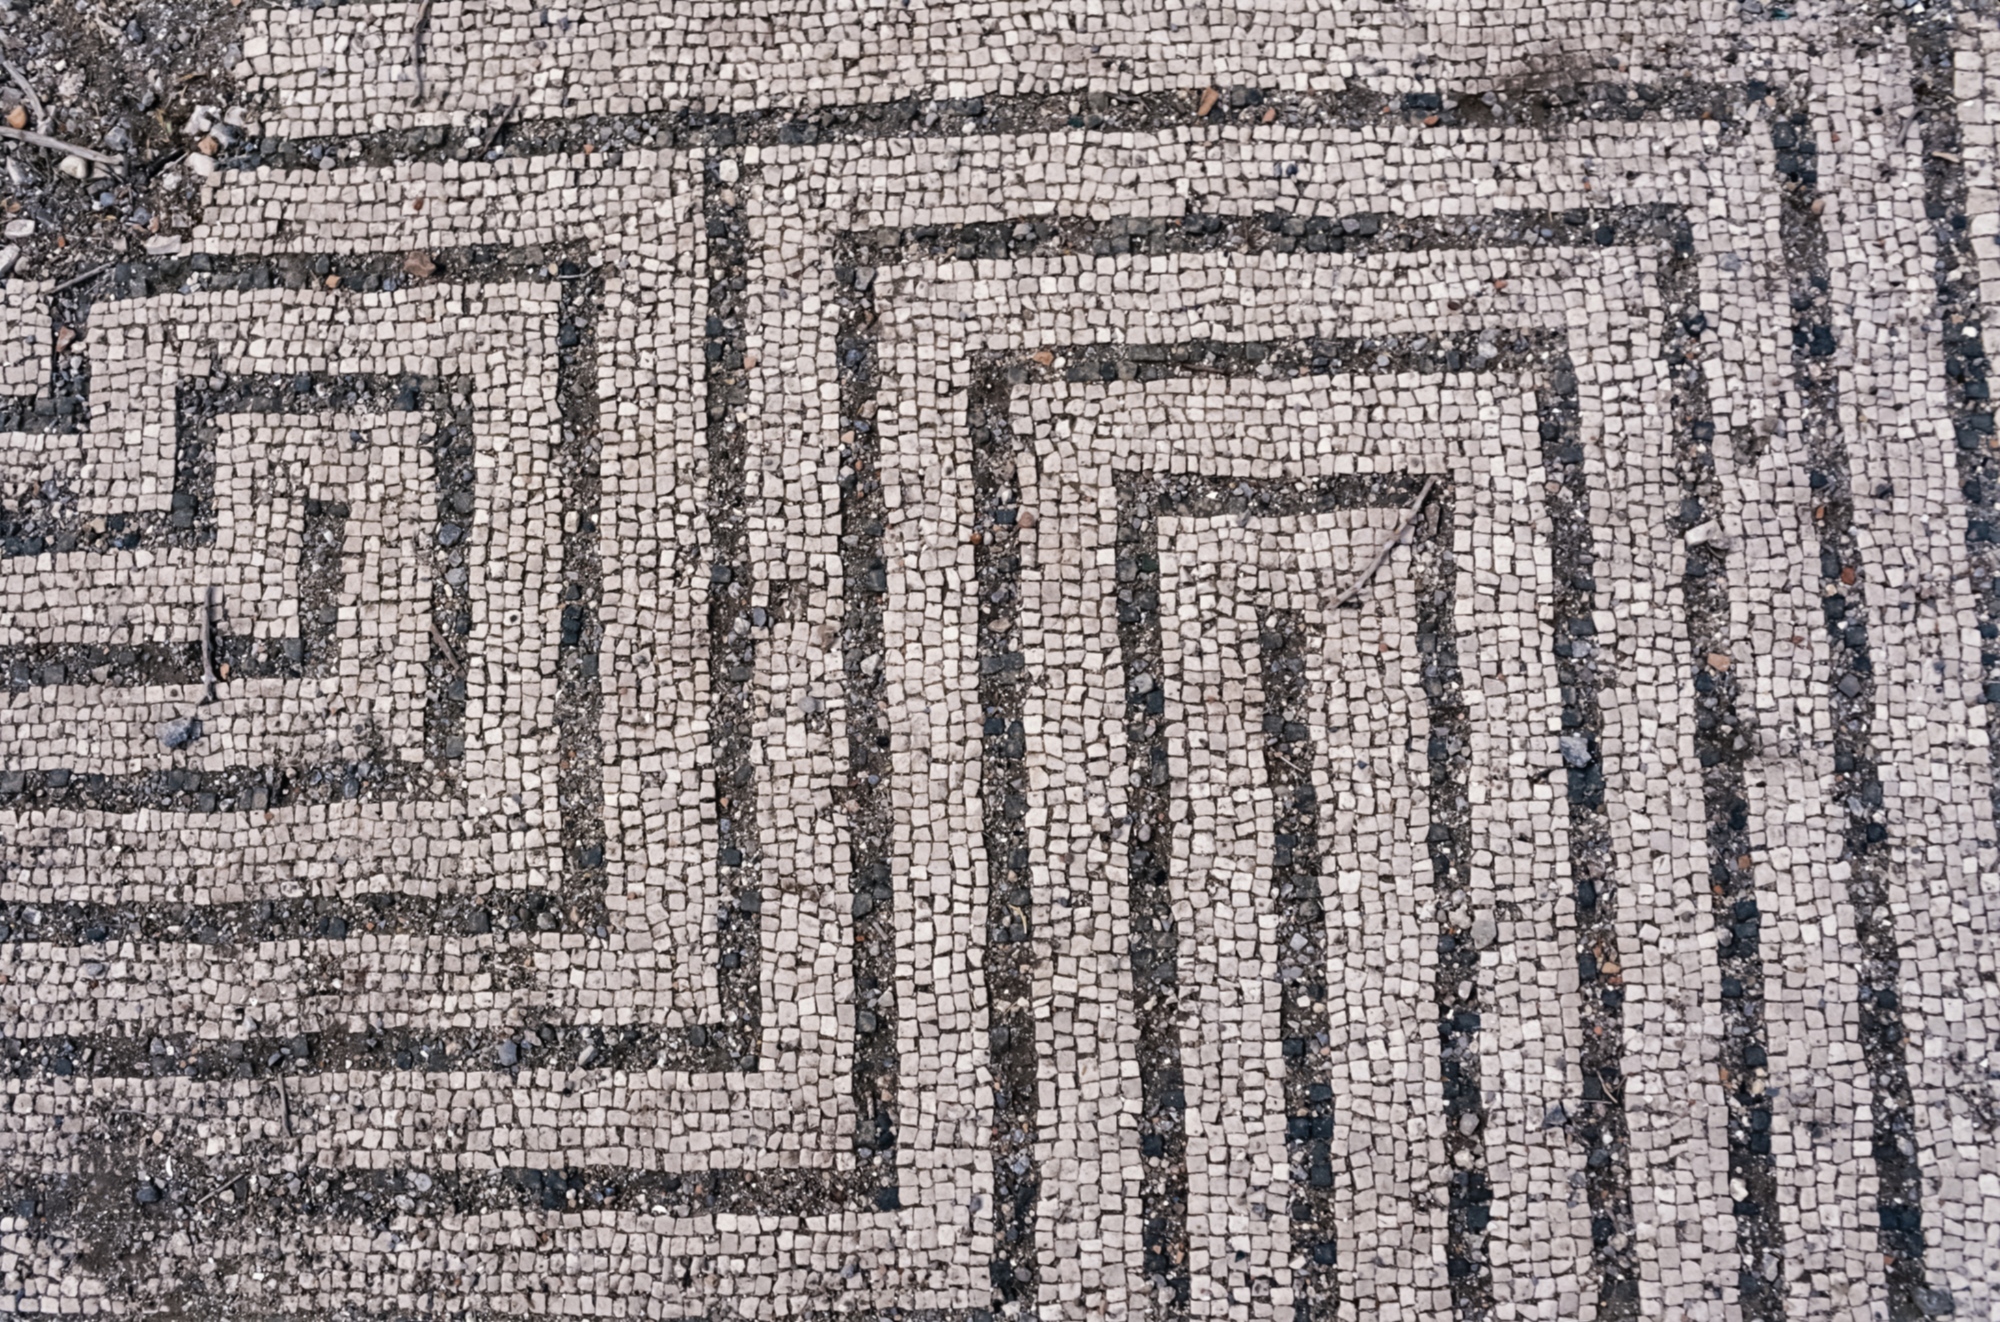 The mosaic on the floor of Villa Domizia in Punta Scaletta